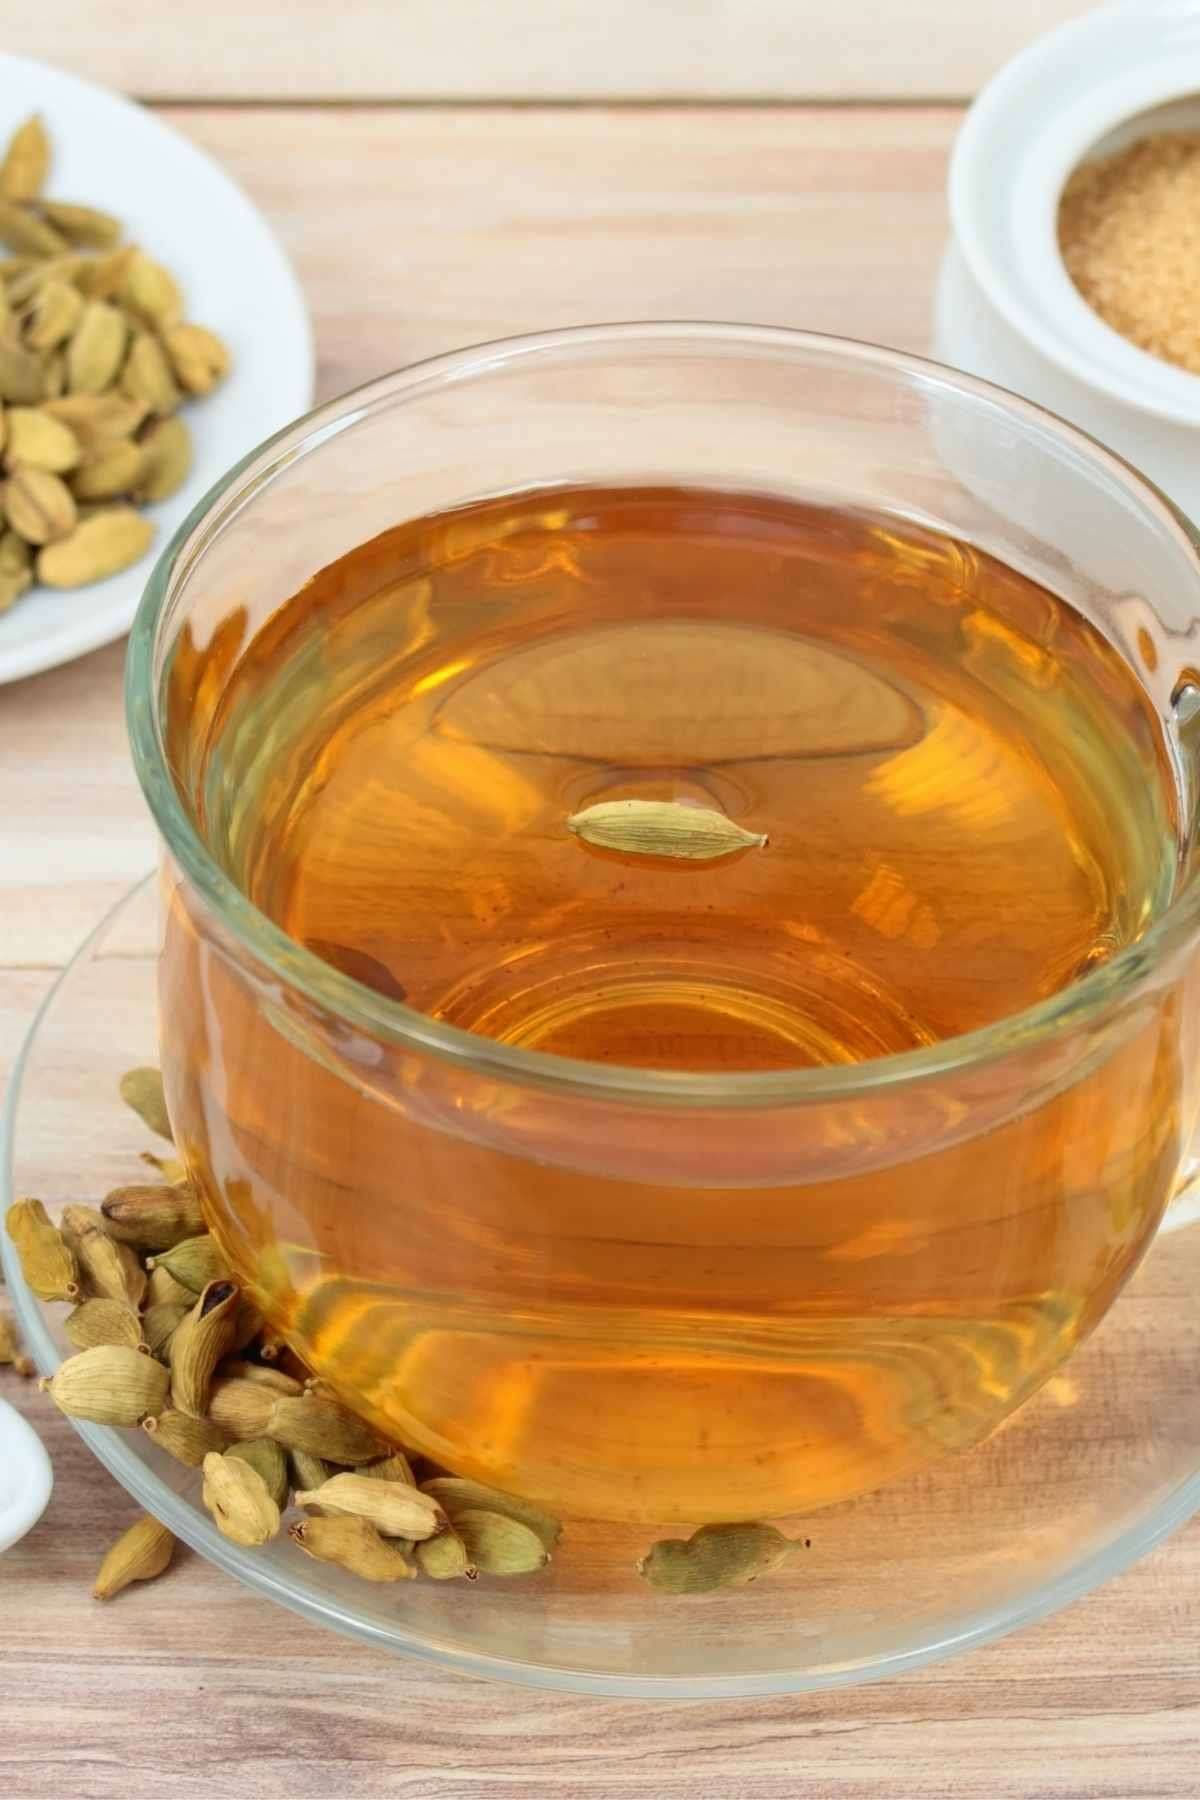 हम इलायची नॉर्मल चाय में भी डालते हैं, लेकिन यदि आप सिर्फ इलायची की चाय पीएंगे, तो ज्यादा फायदे में रहेंगे